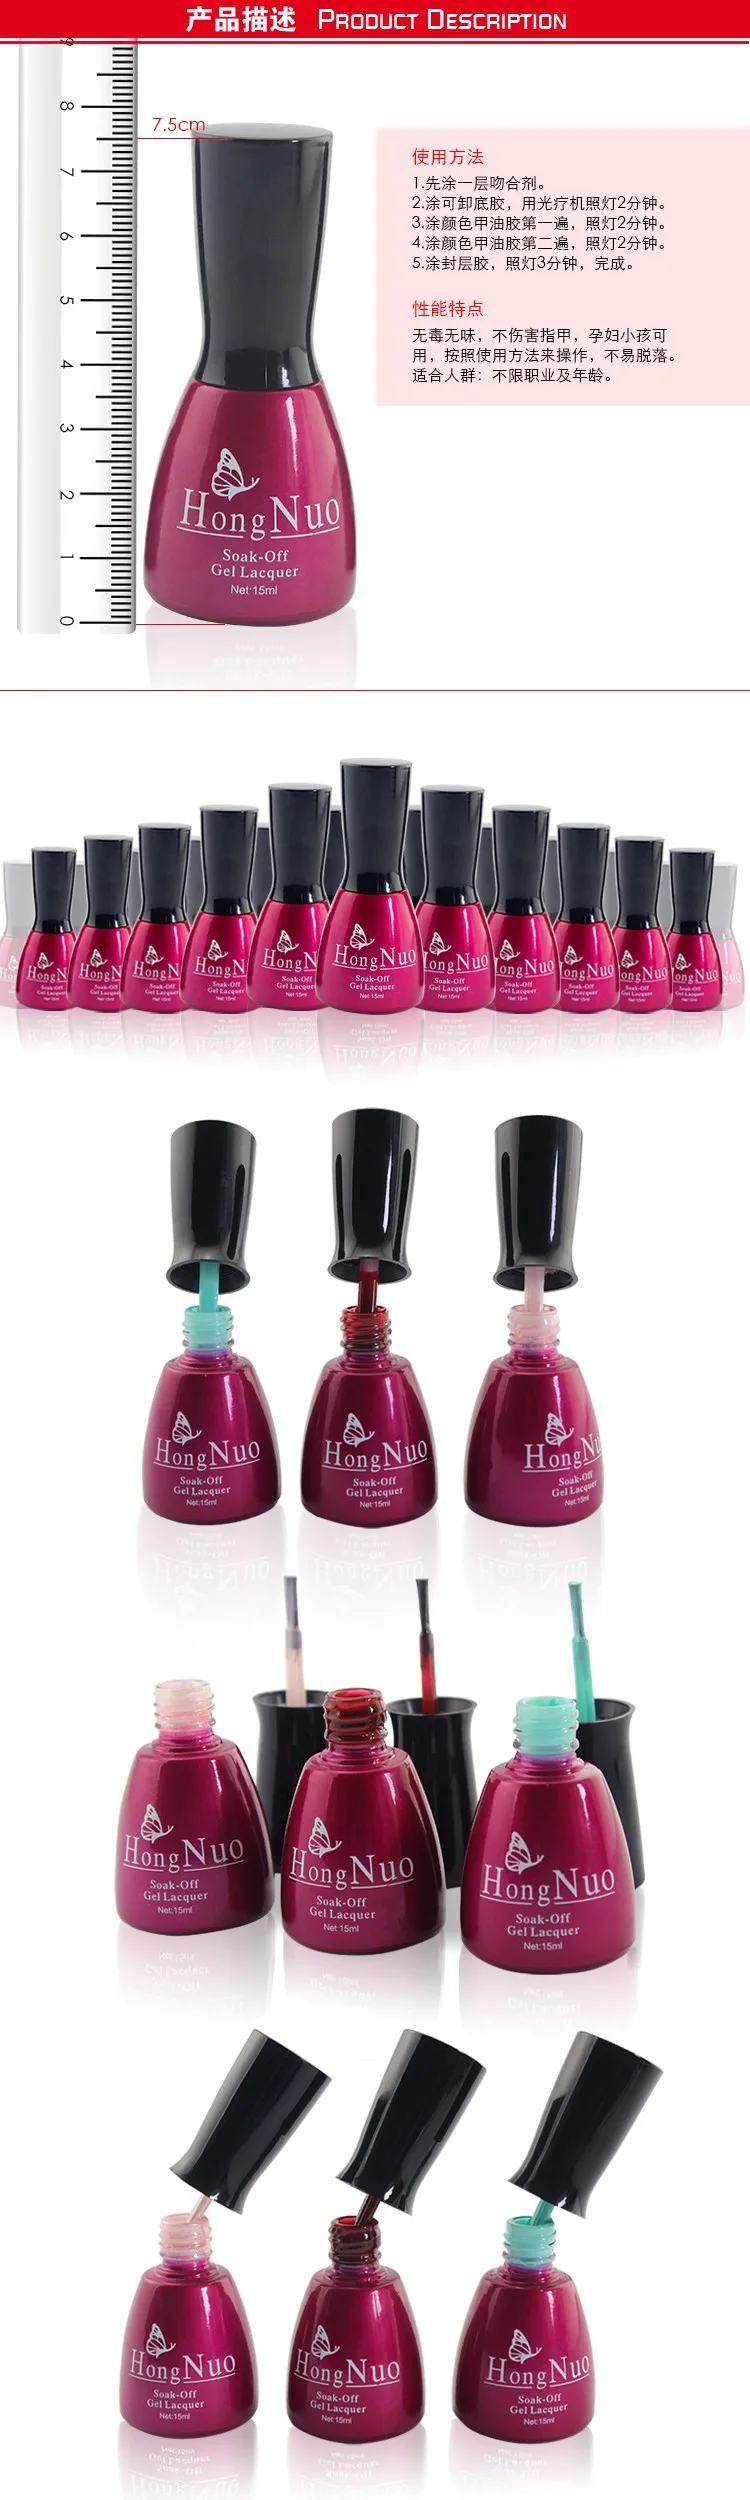 Btt-13, розовый красный бутылки uv гель-лака, 2013 дизайн гель для ногтей, 200 цветов для вашего выбора